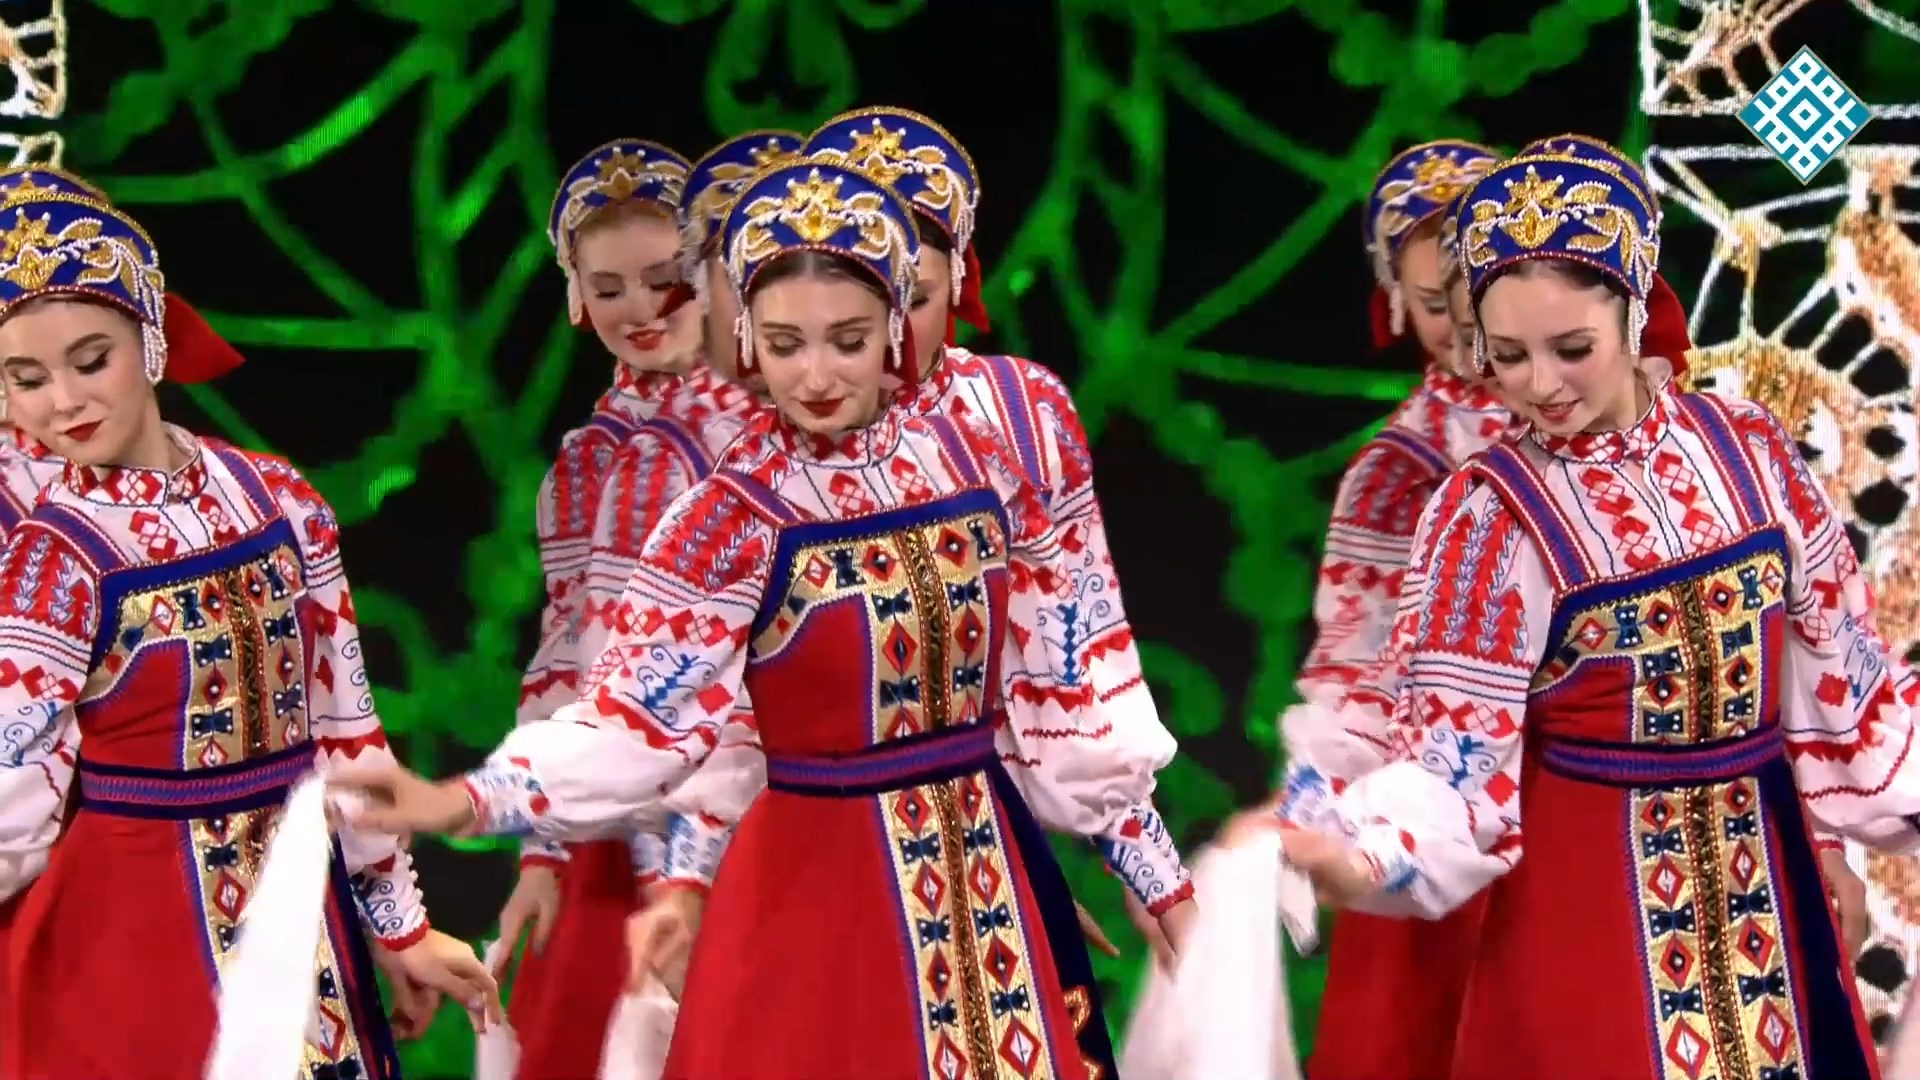 "Московские хороводы", институт культуры. "Moscow Round Dances", Institute of Culture.